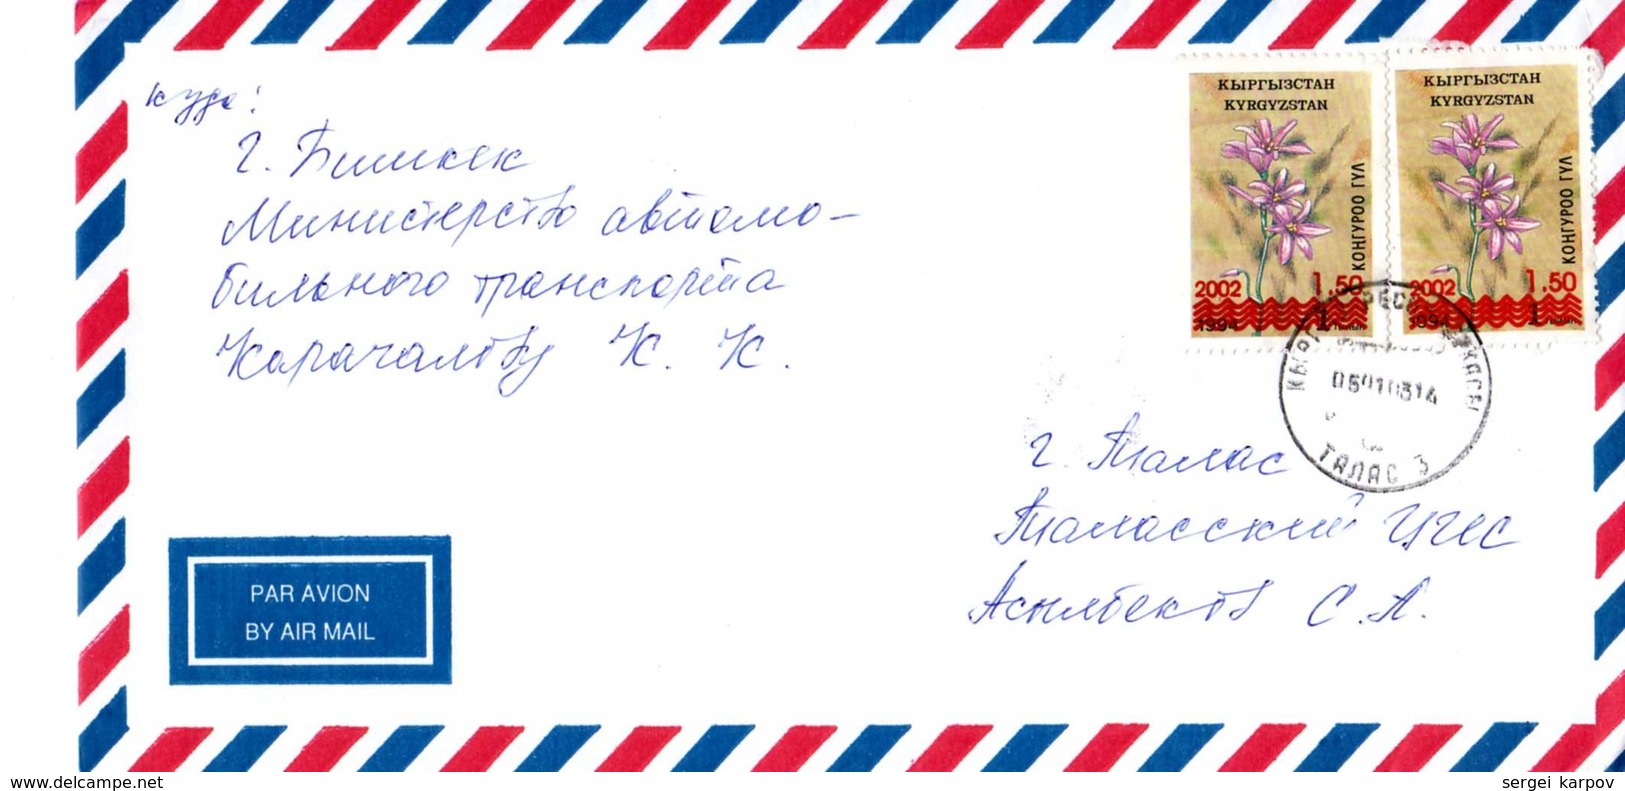 Mail: Kyrgyzstan, 01. 2003. - Kirgisistan